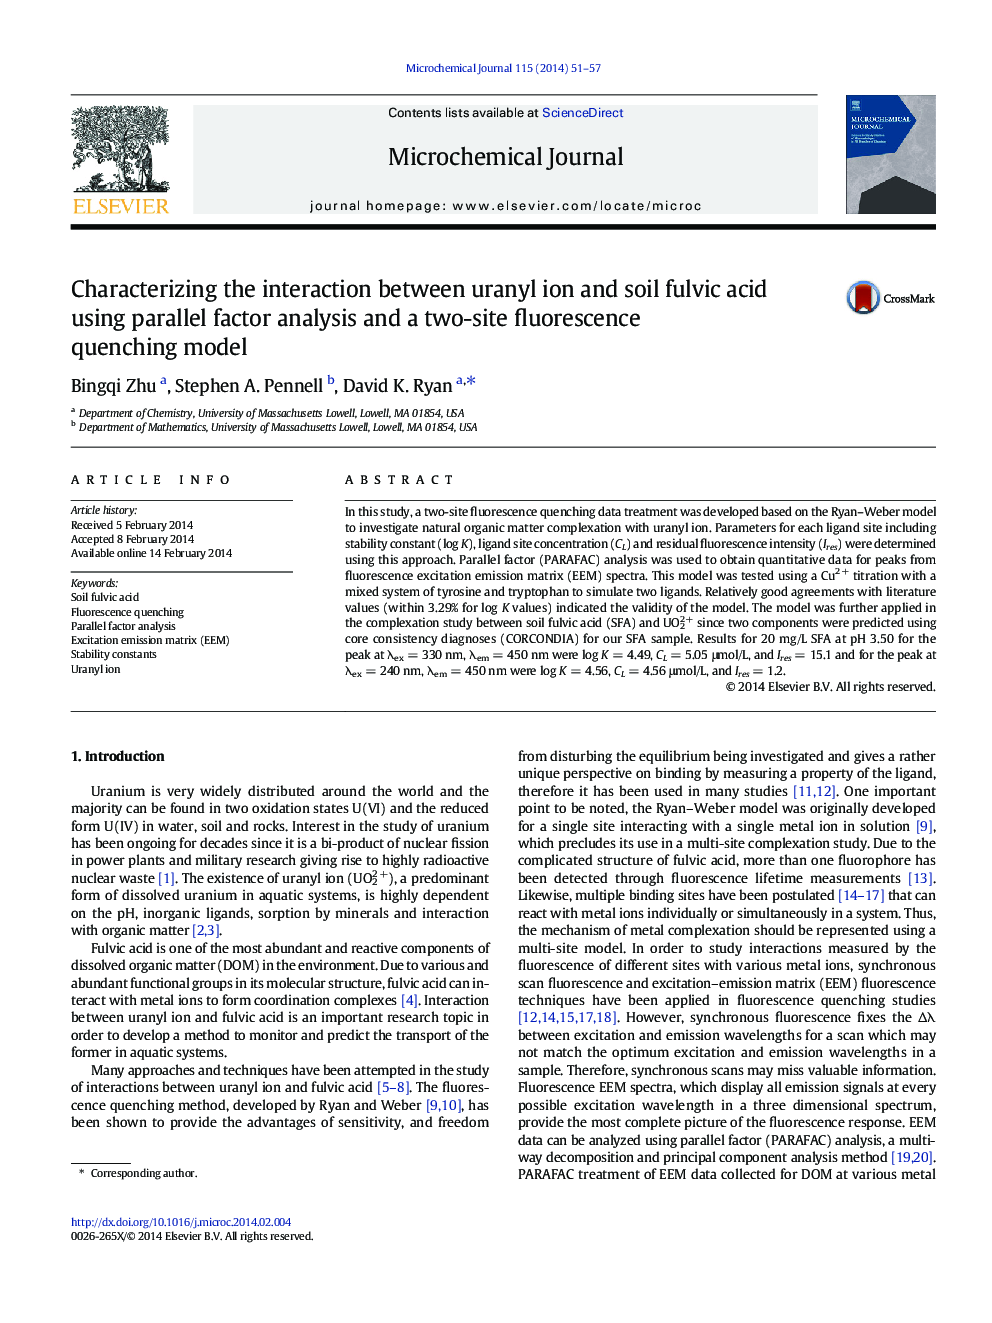 تعیین اثر متقابل یون اورانیل و اسیدفولیون خاک با استفاده از تحلیل عامل موازی و دو مدل ریختن فلورسانس 